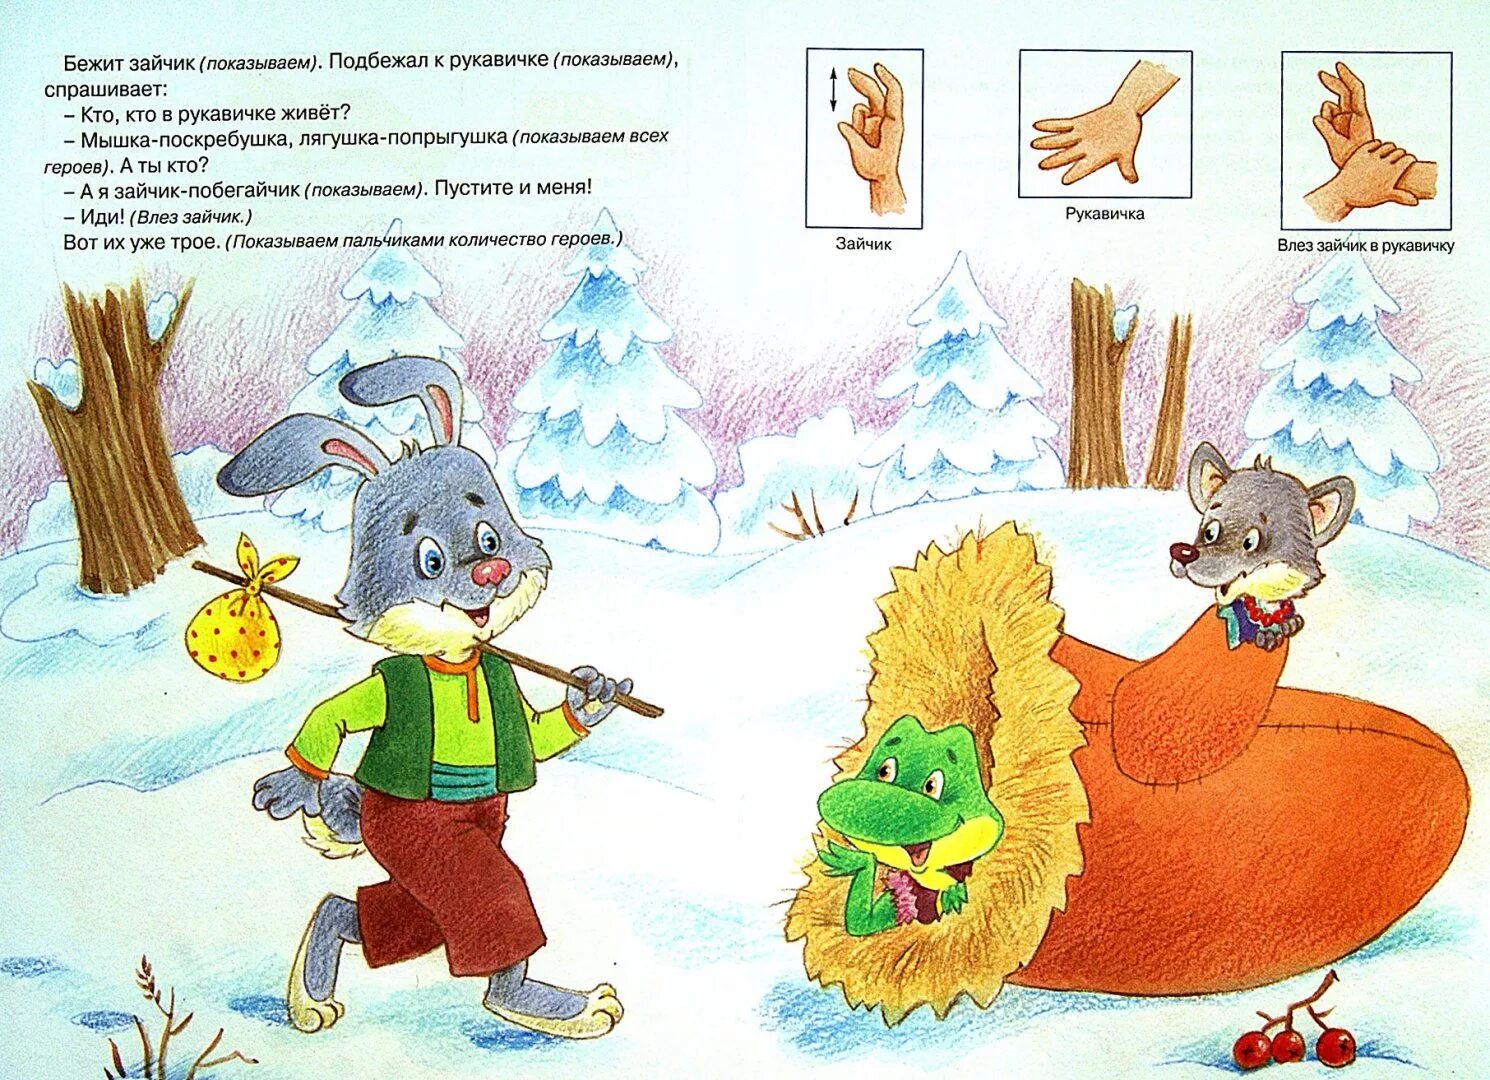 Children's mitten coloring book